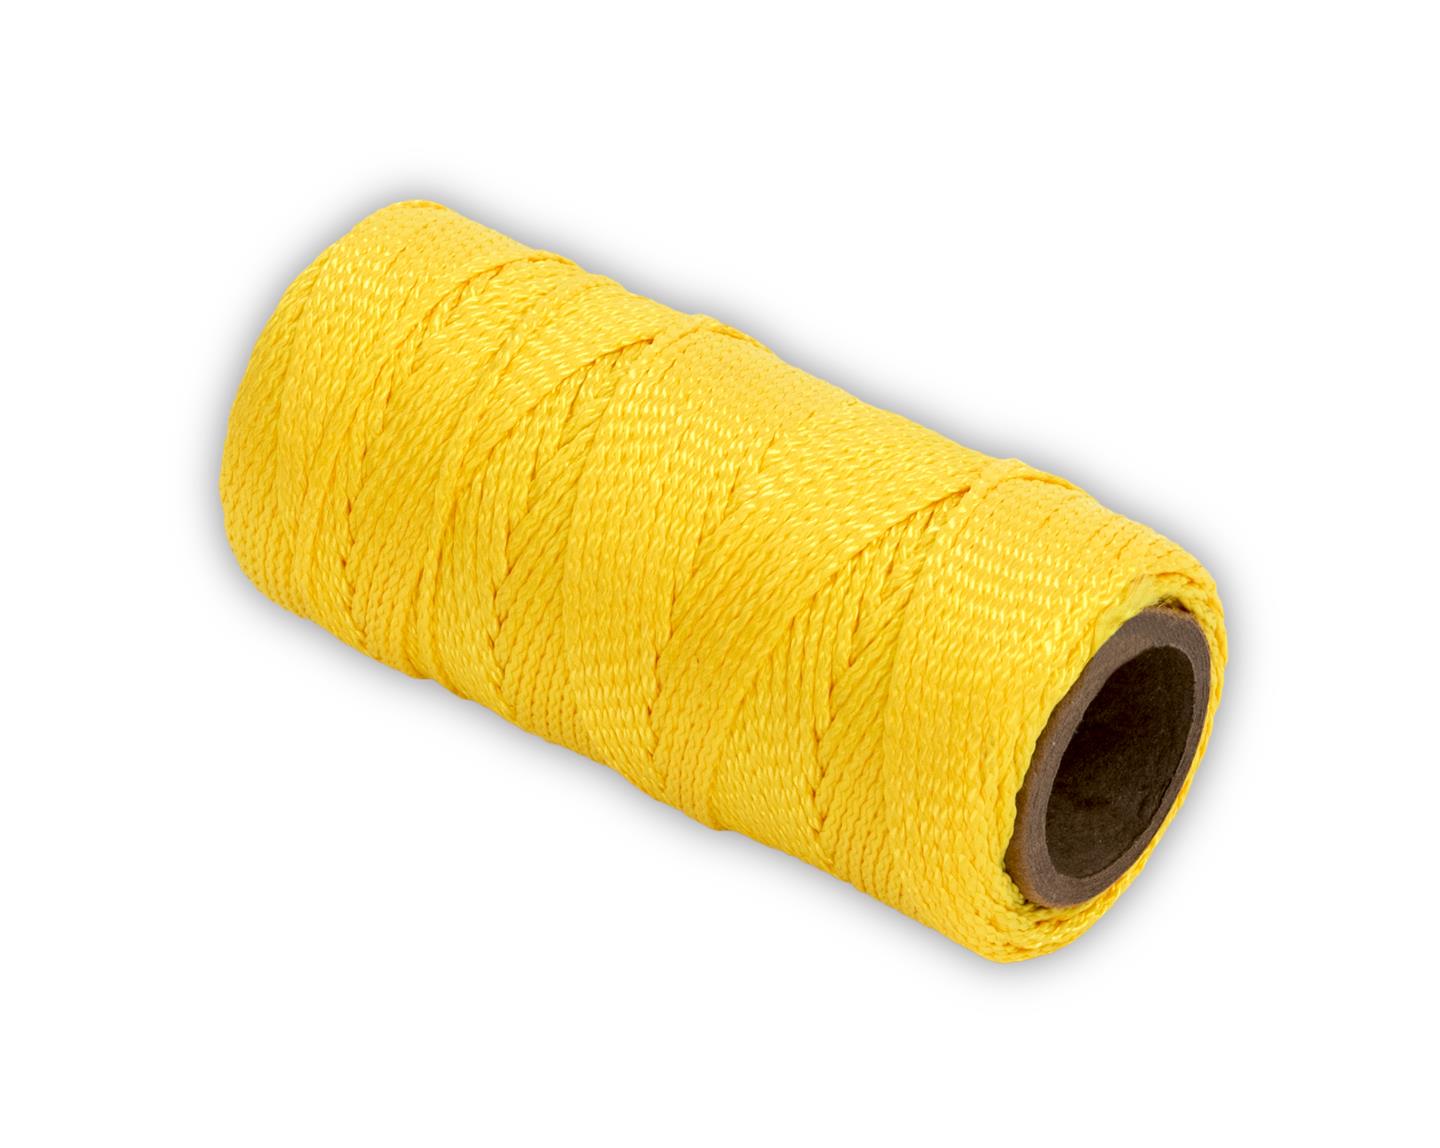 Marshalltown 10240 Braided Nylon Mason's Line 125' Yellow, Size 18 4" Core